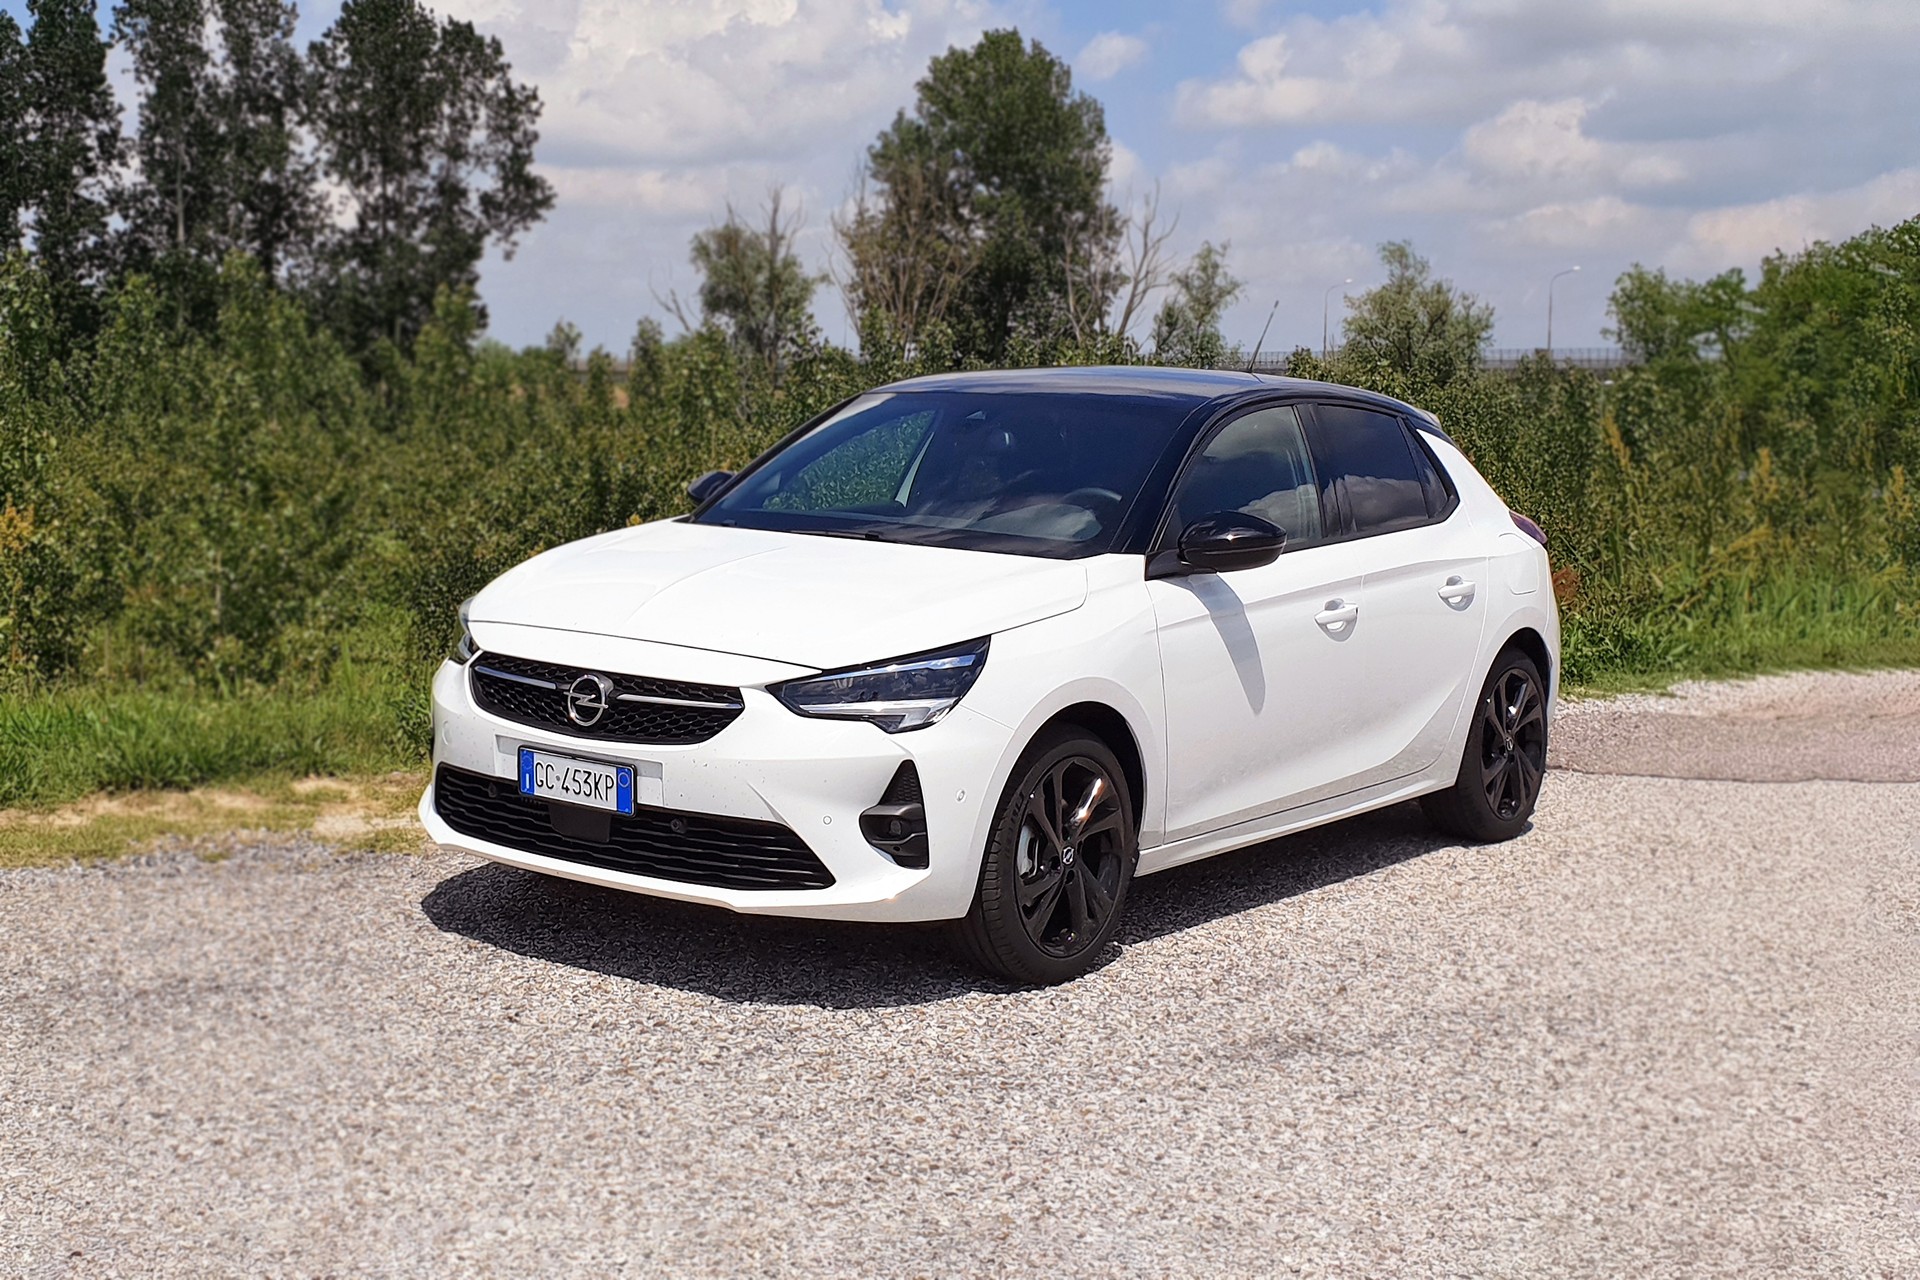 Opel Nuova Corsa Electric, Configuratore e Listino Nuovo